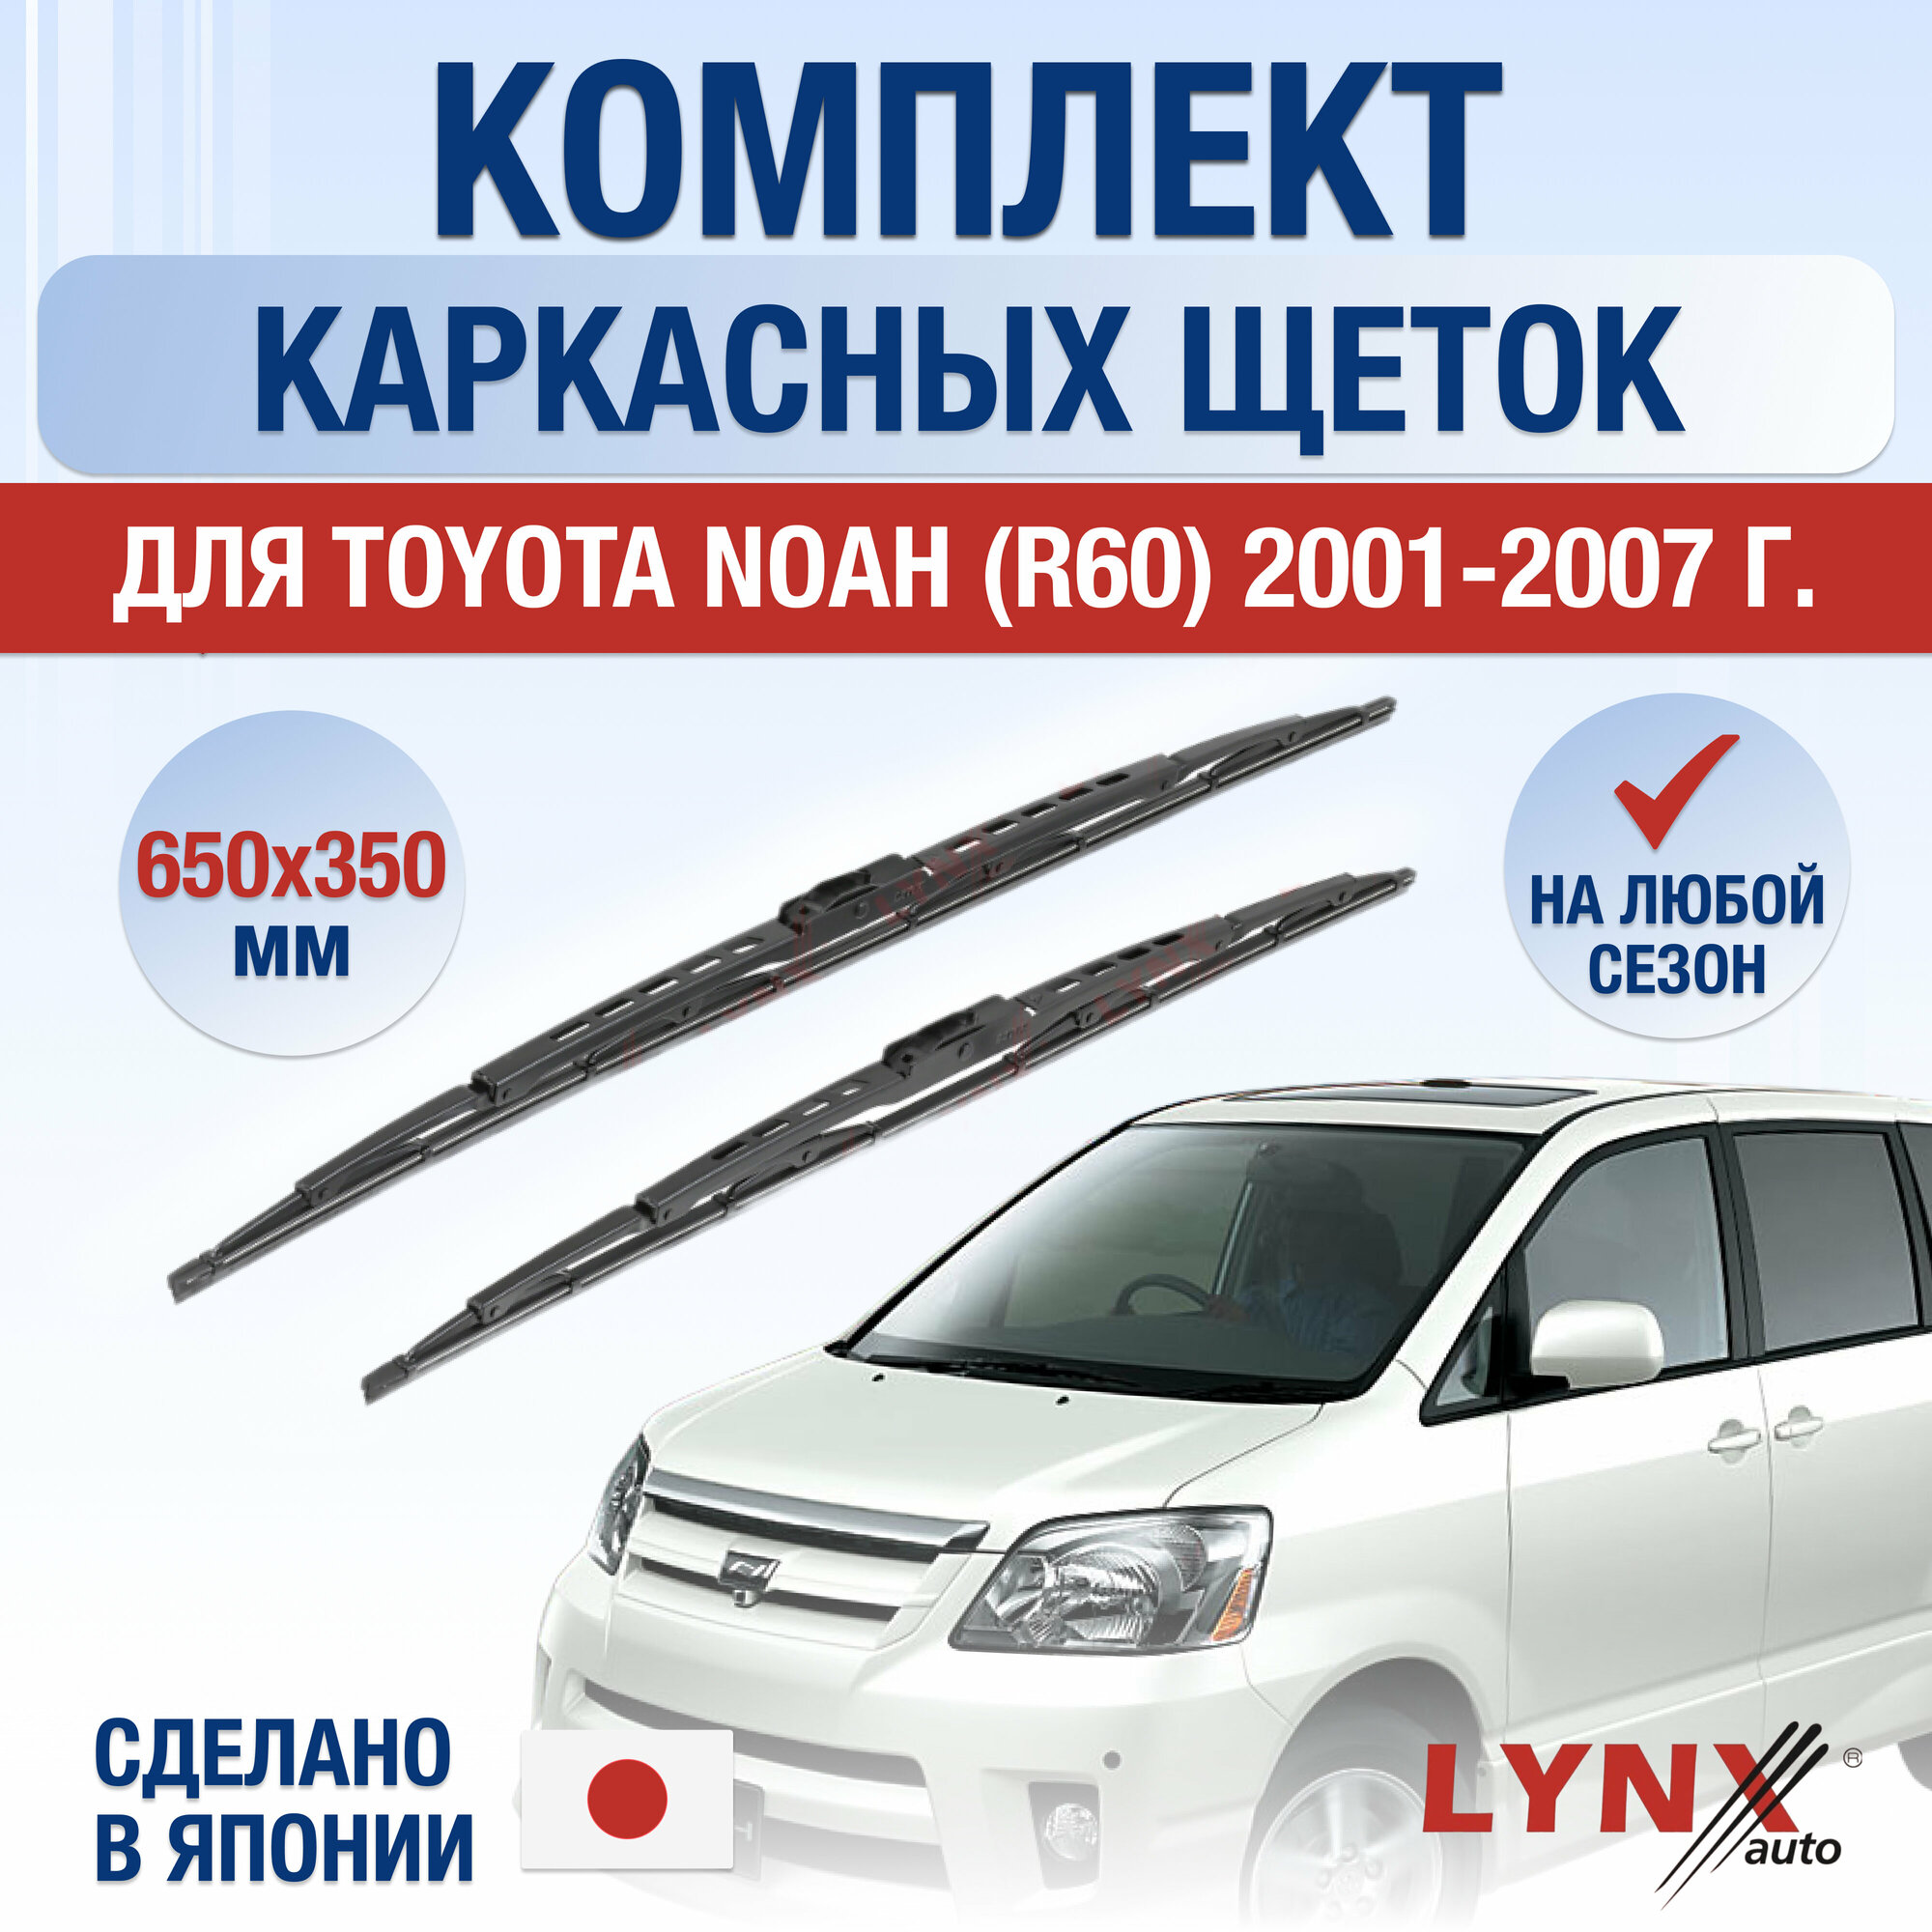 Щетки стеклоочистителя для Toyota Noah (R60) / 2001 2002 2003 2004 2005 2006 2007 / Комплект каркасных дворников 650 350 мм Тойота Ноах